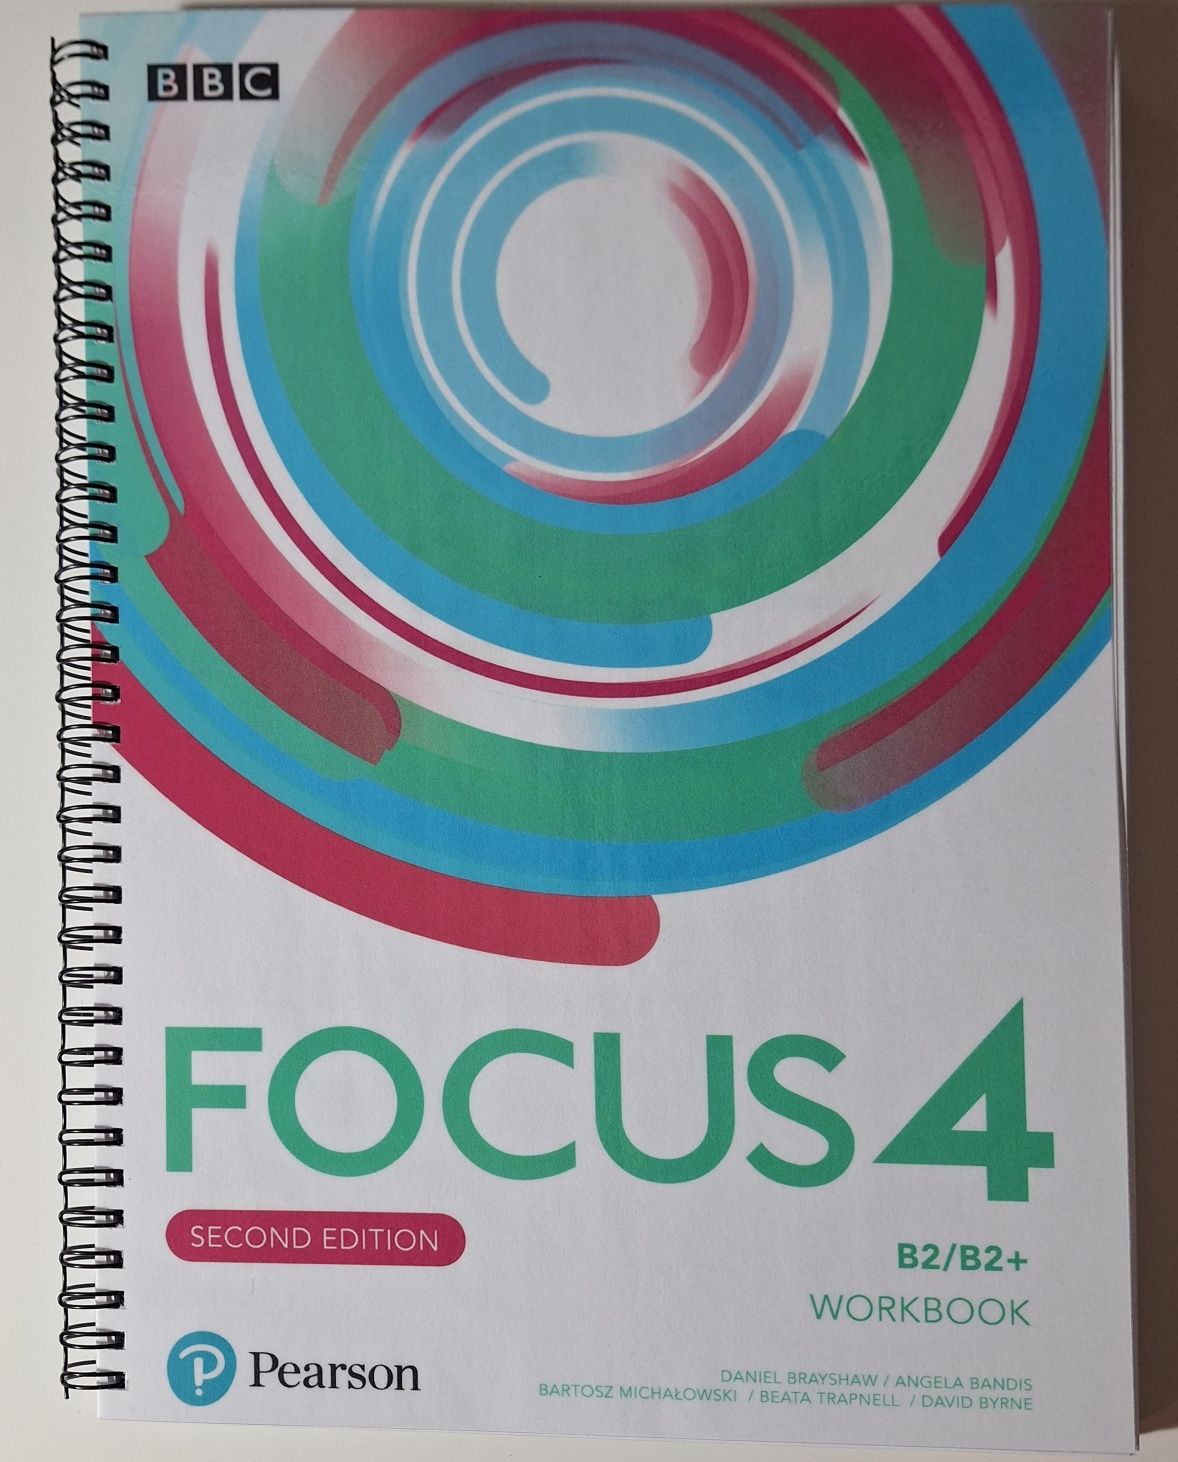 Sprzedam Focus 4 książkę i zeszyt do ćwiczeń..